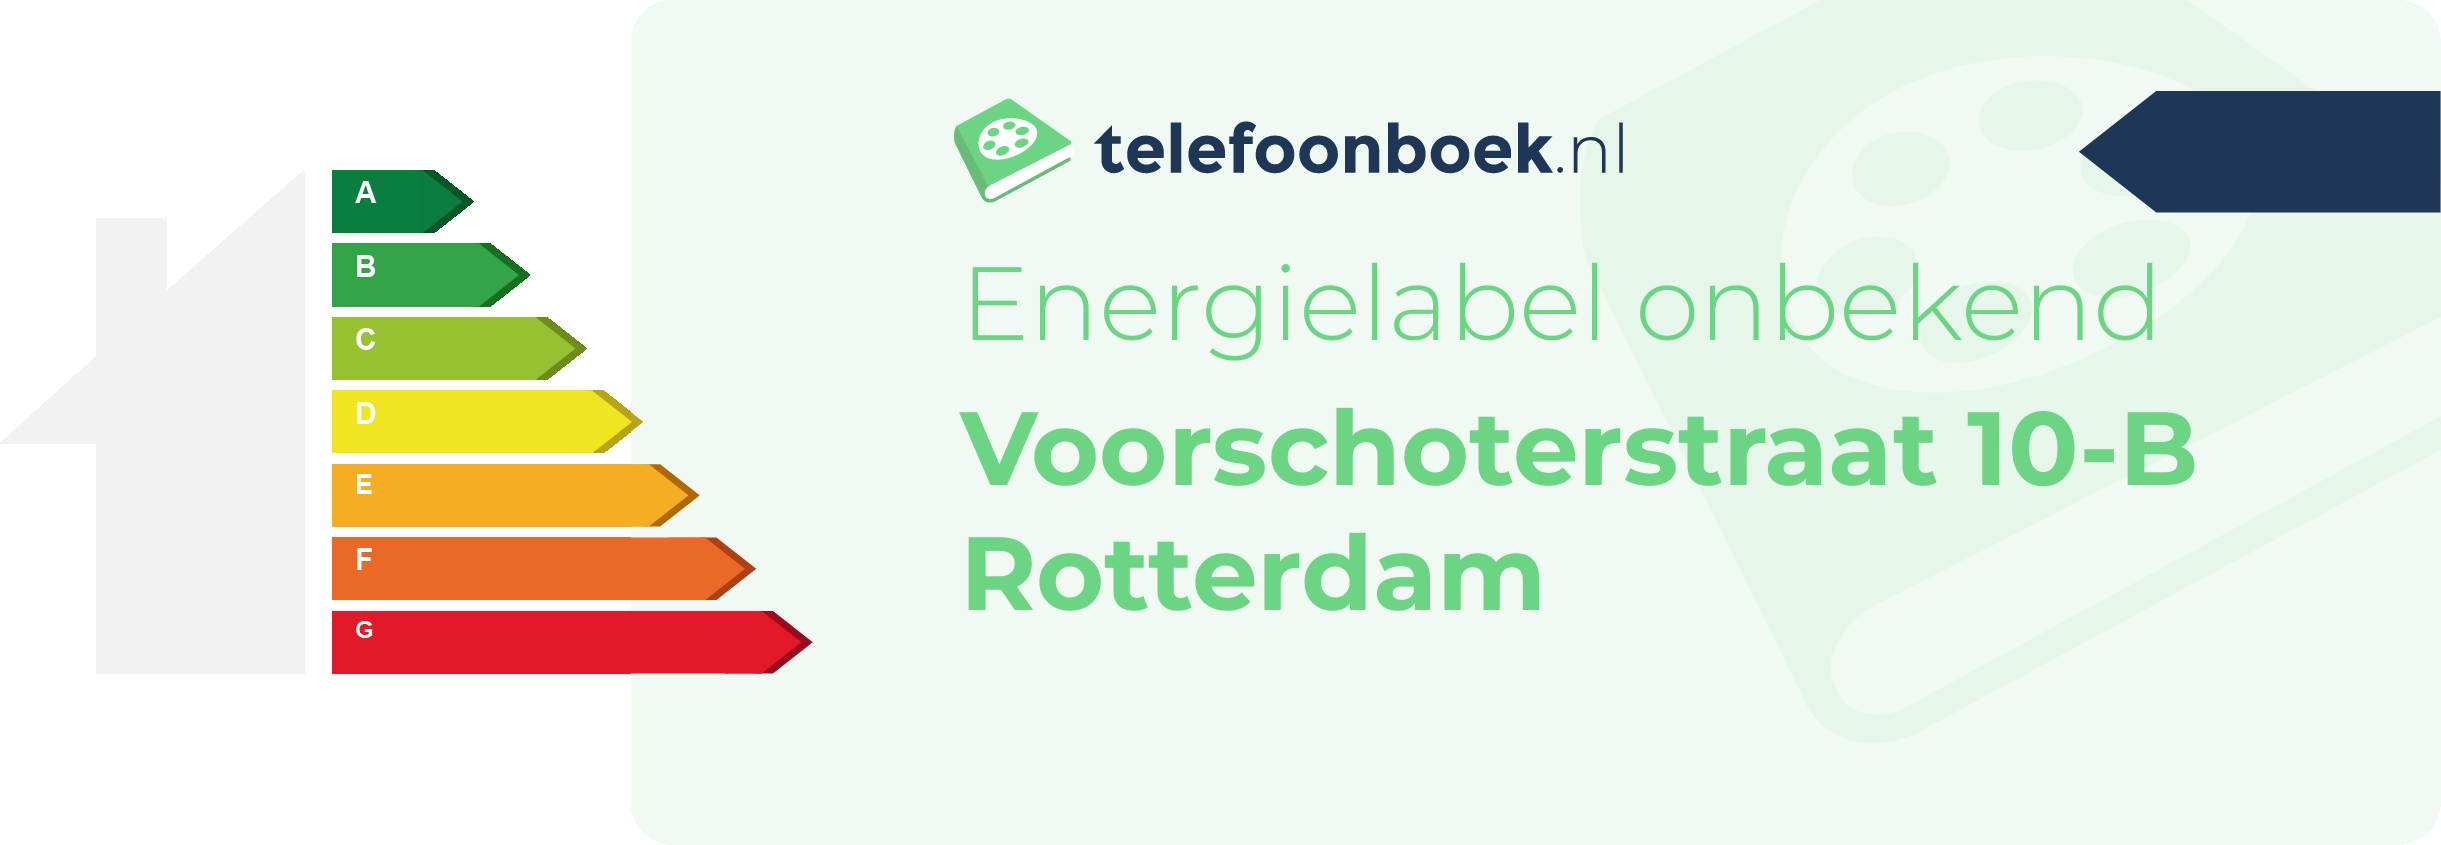 Energielabel Voorschoterstraat 10-B Rotterdam